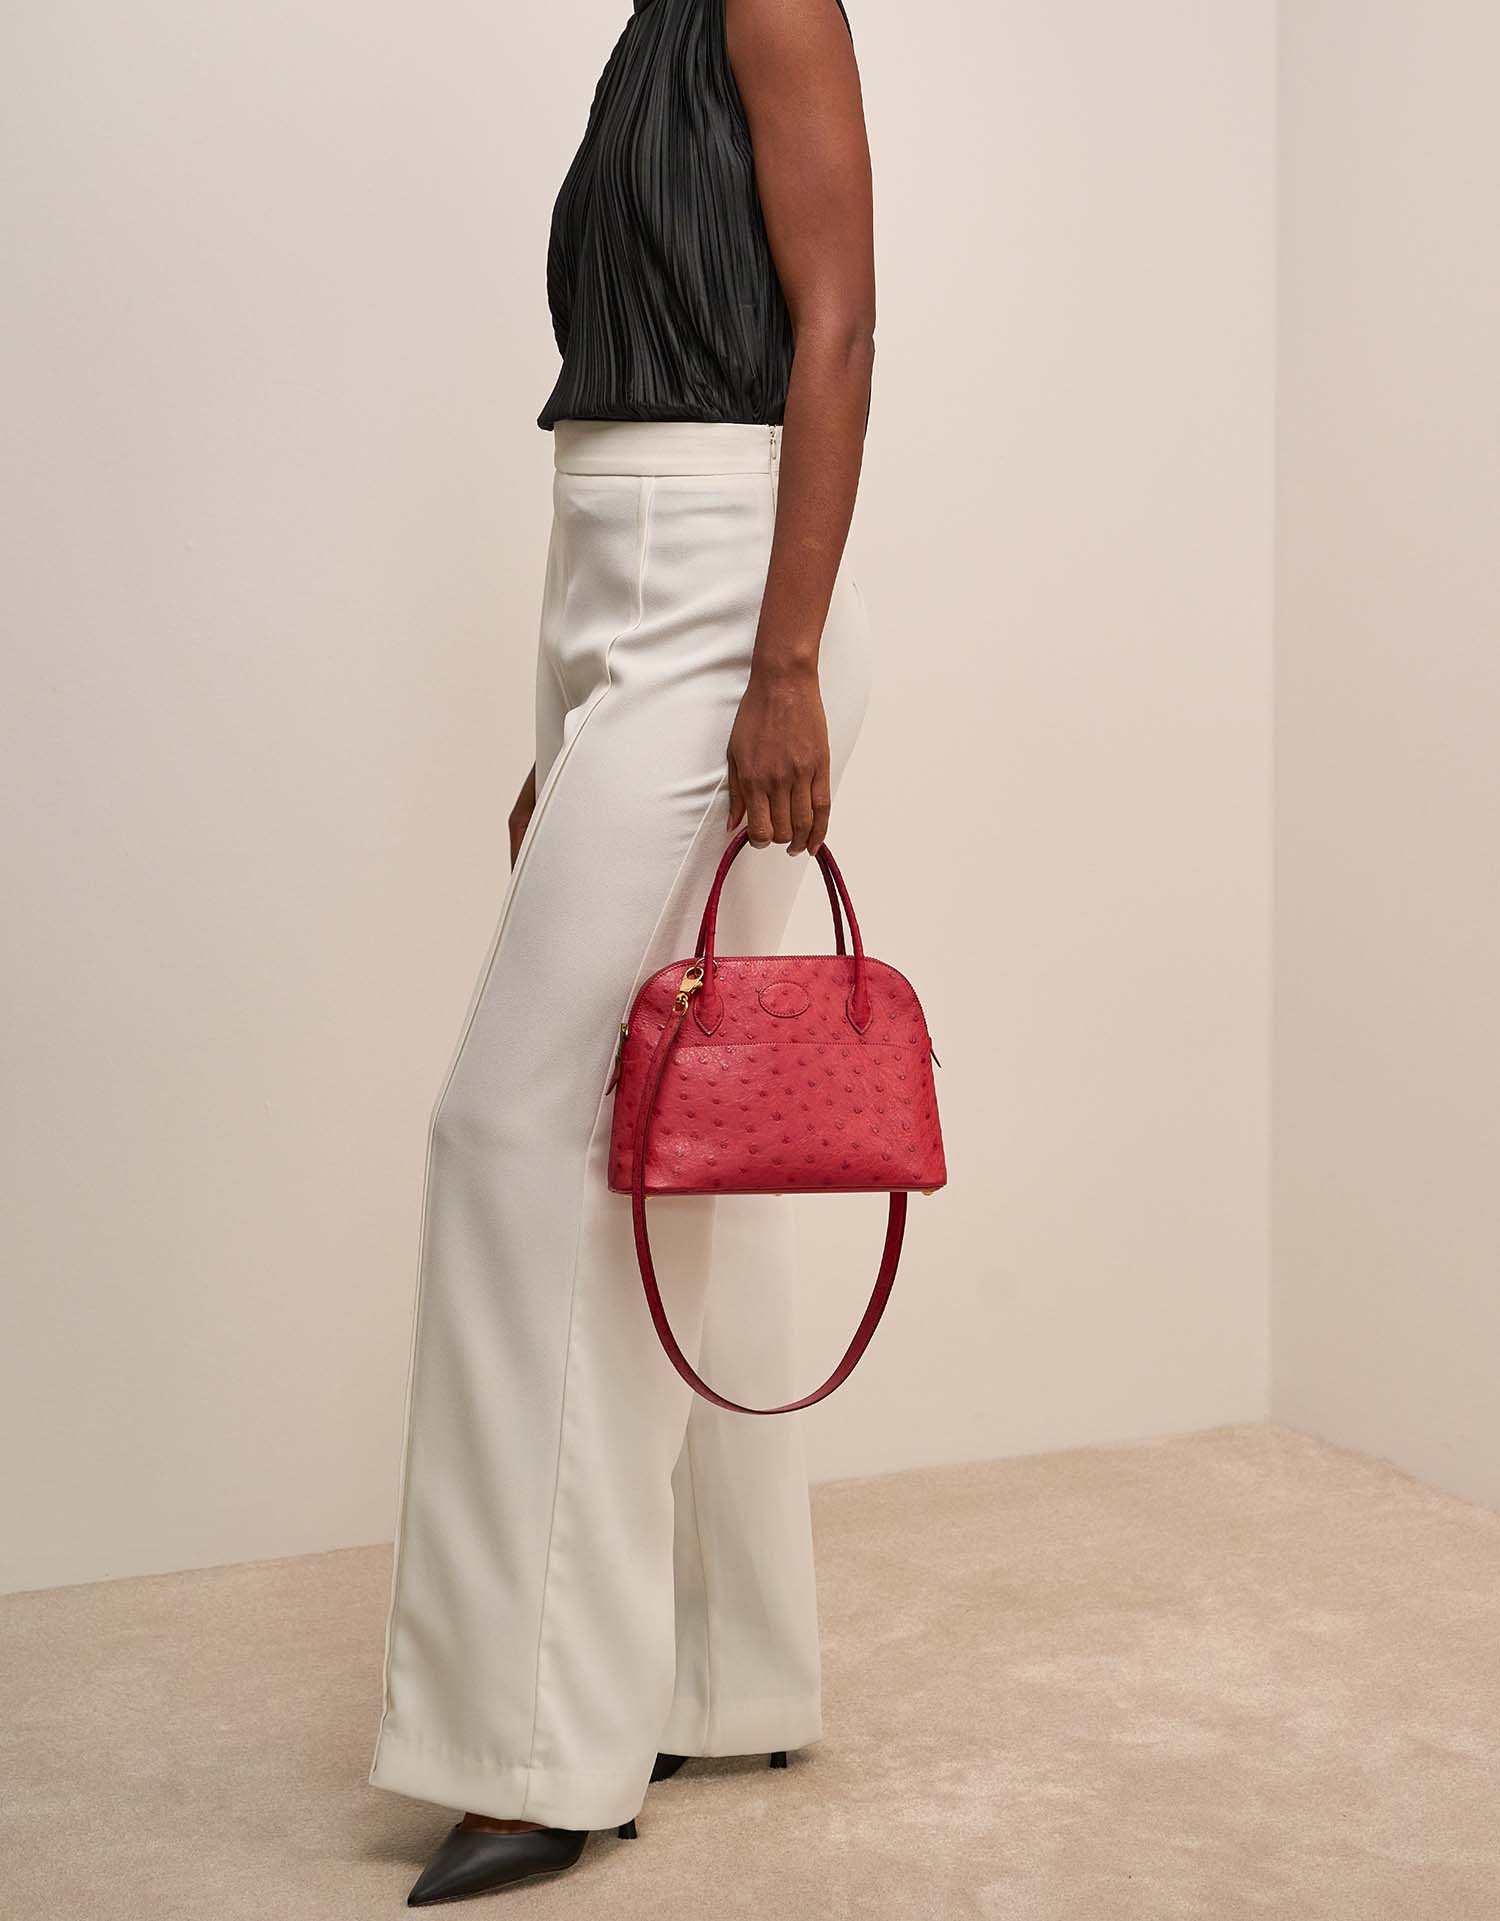 Hermès Bolide 27 RougeVif on Model | Sell your designer bag on Saclab.com